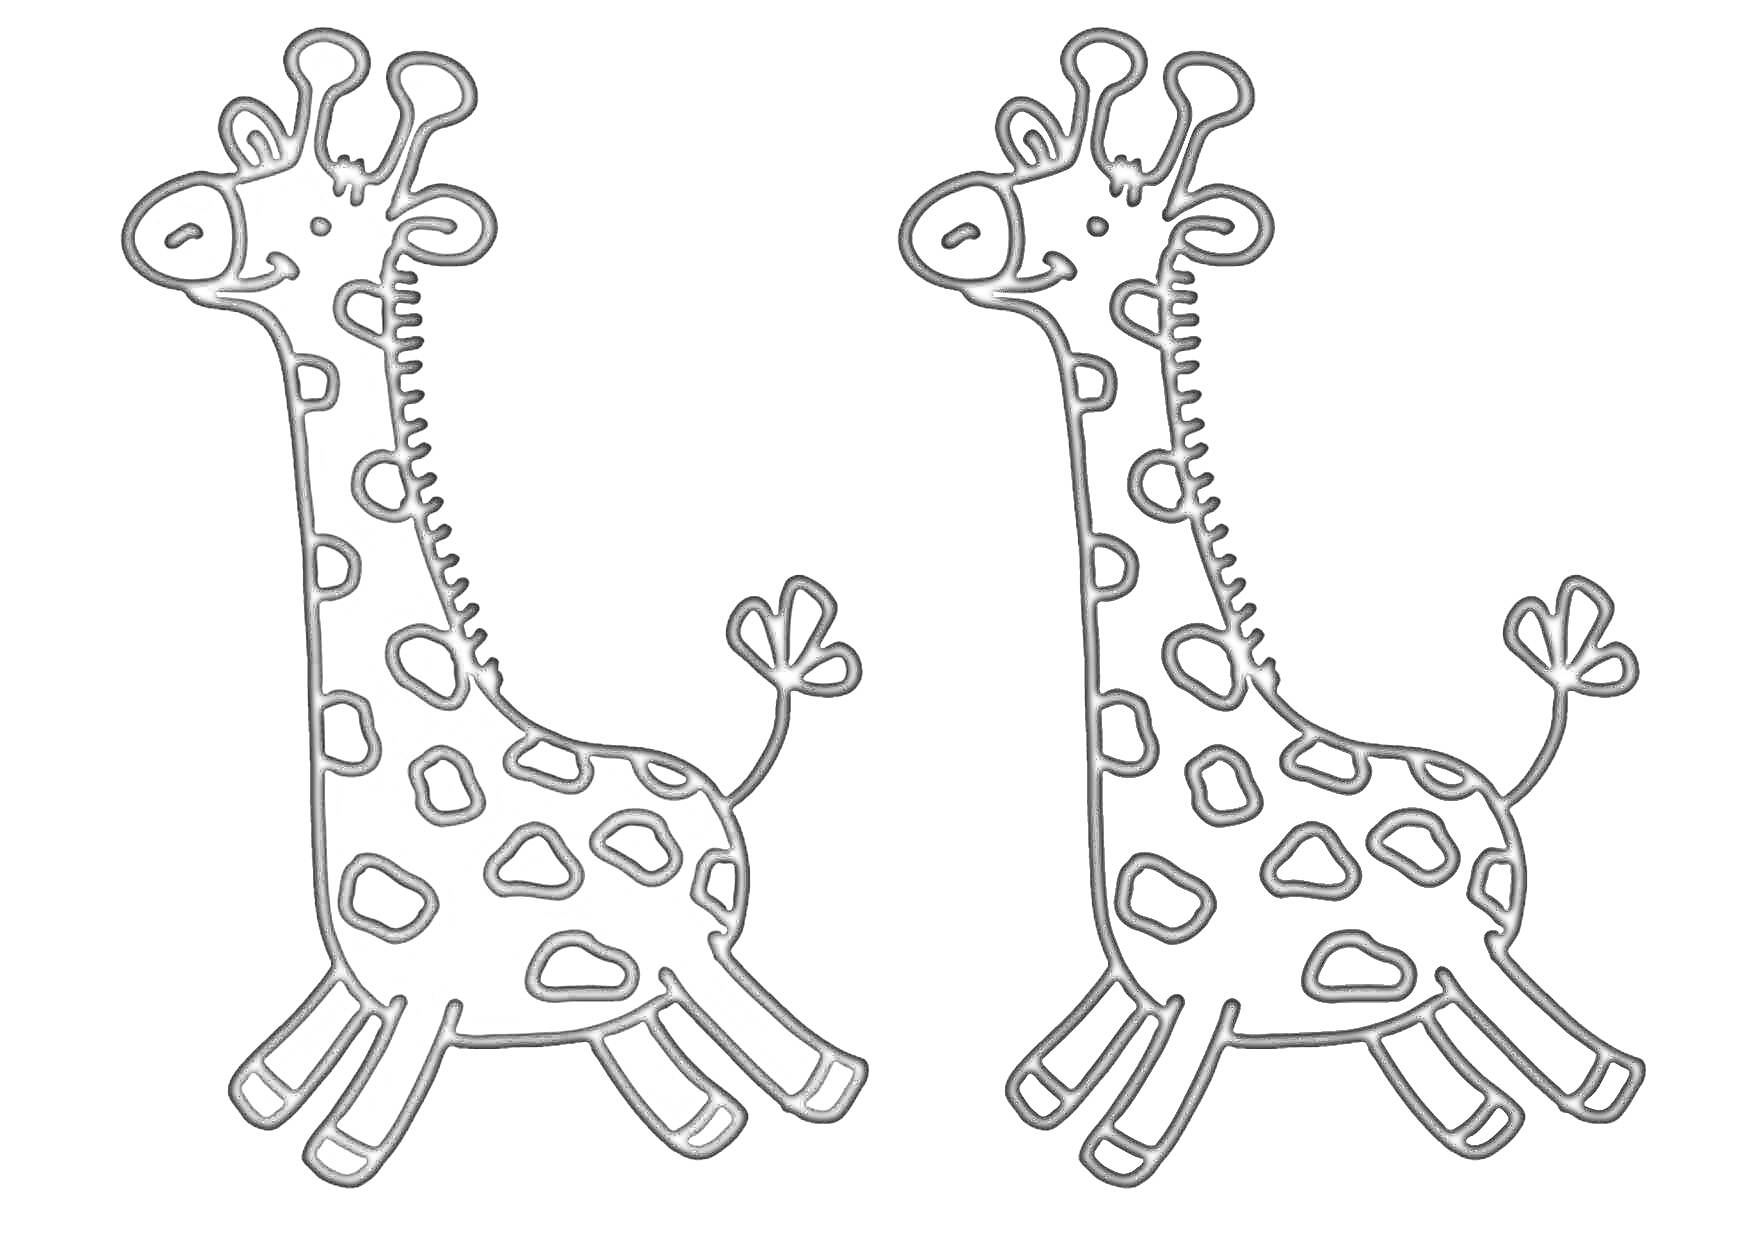 Раскраска Две жирафы - одна цветная, другая черно-белая для раскрашивания